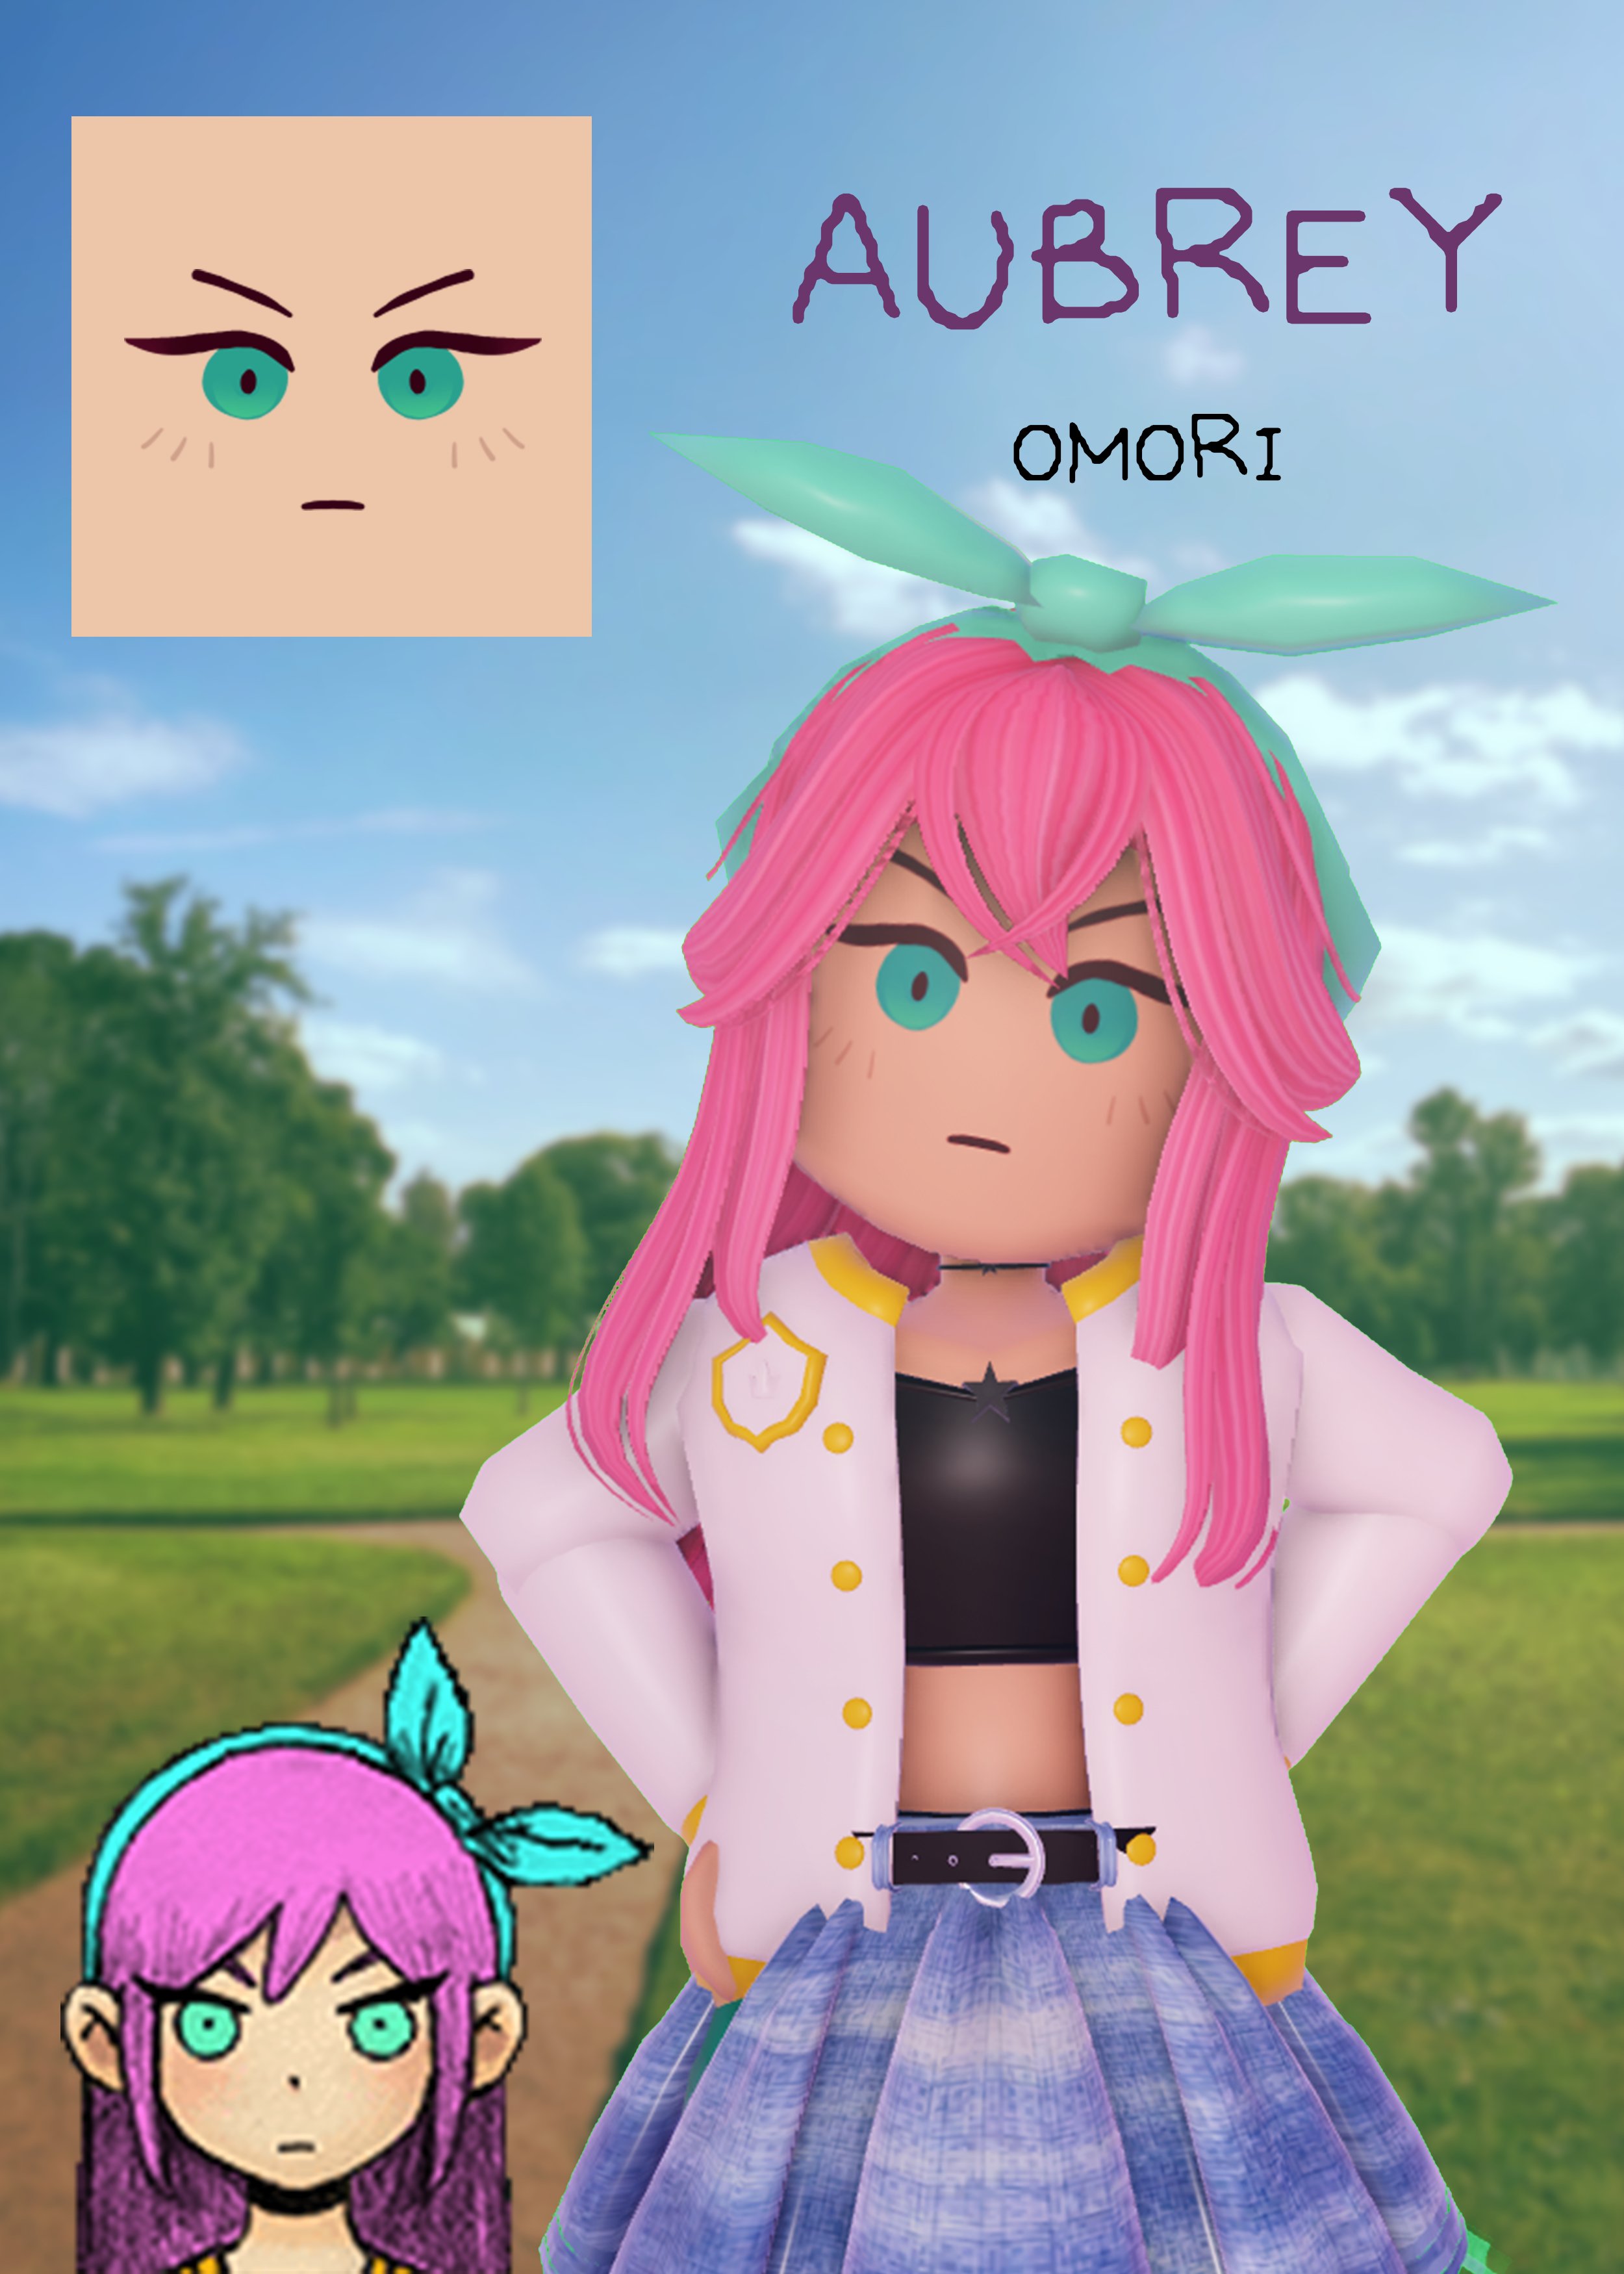 Với thế giới game đang ngày càng được phát triển thì không có gì tuyệt vời hơn khi sở hữu chiếc Avatar Omori Roblox